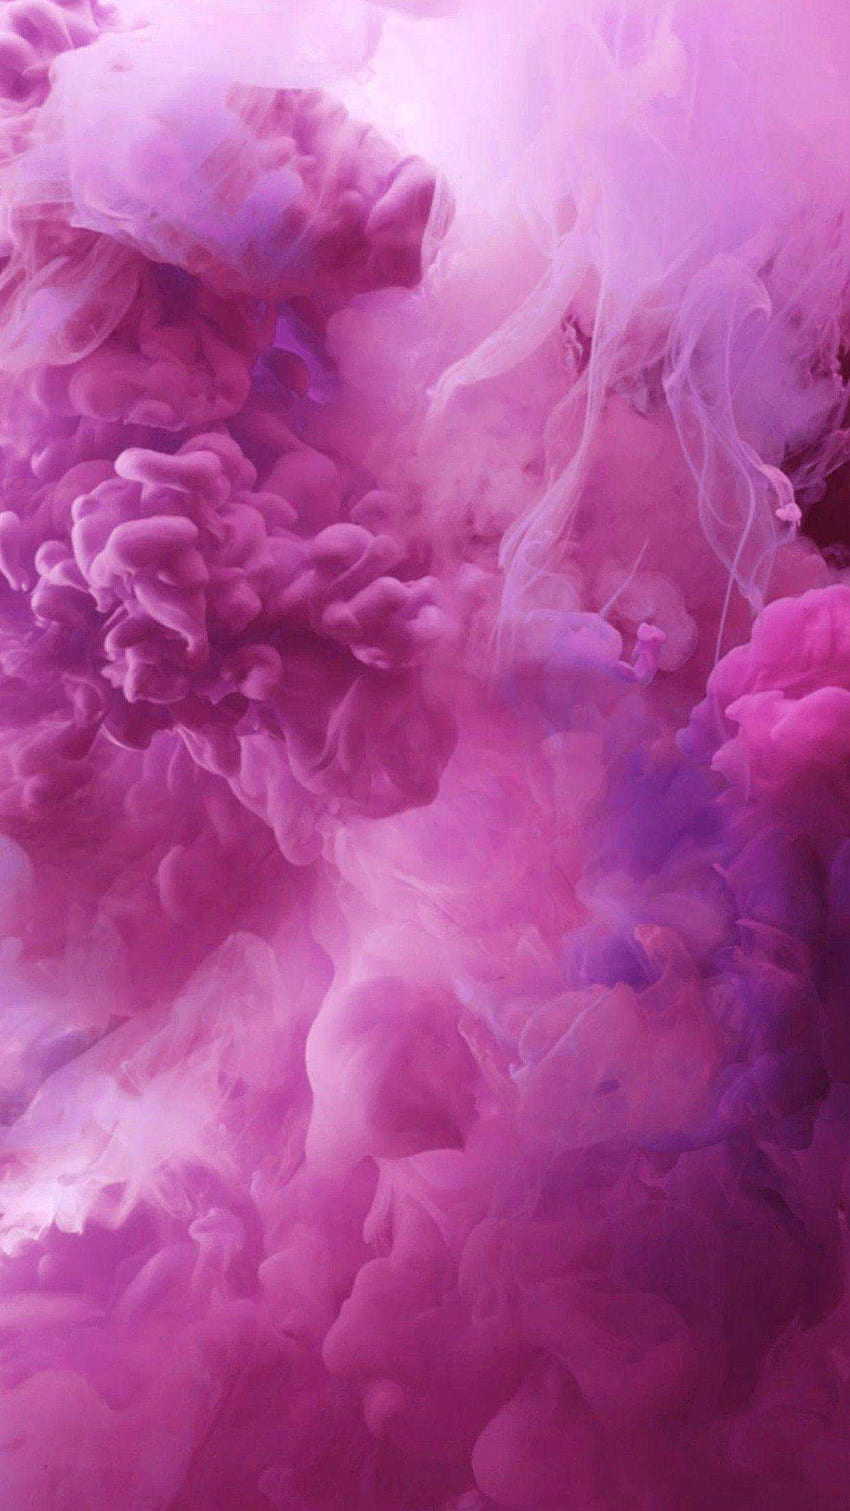 Baddie Aesthetic Stoner iPhone, Pink Trippy HD phone wallpaper